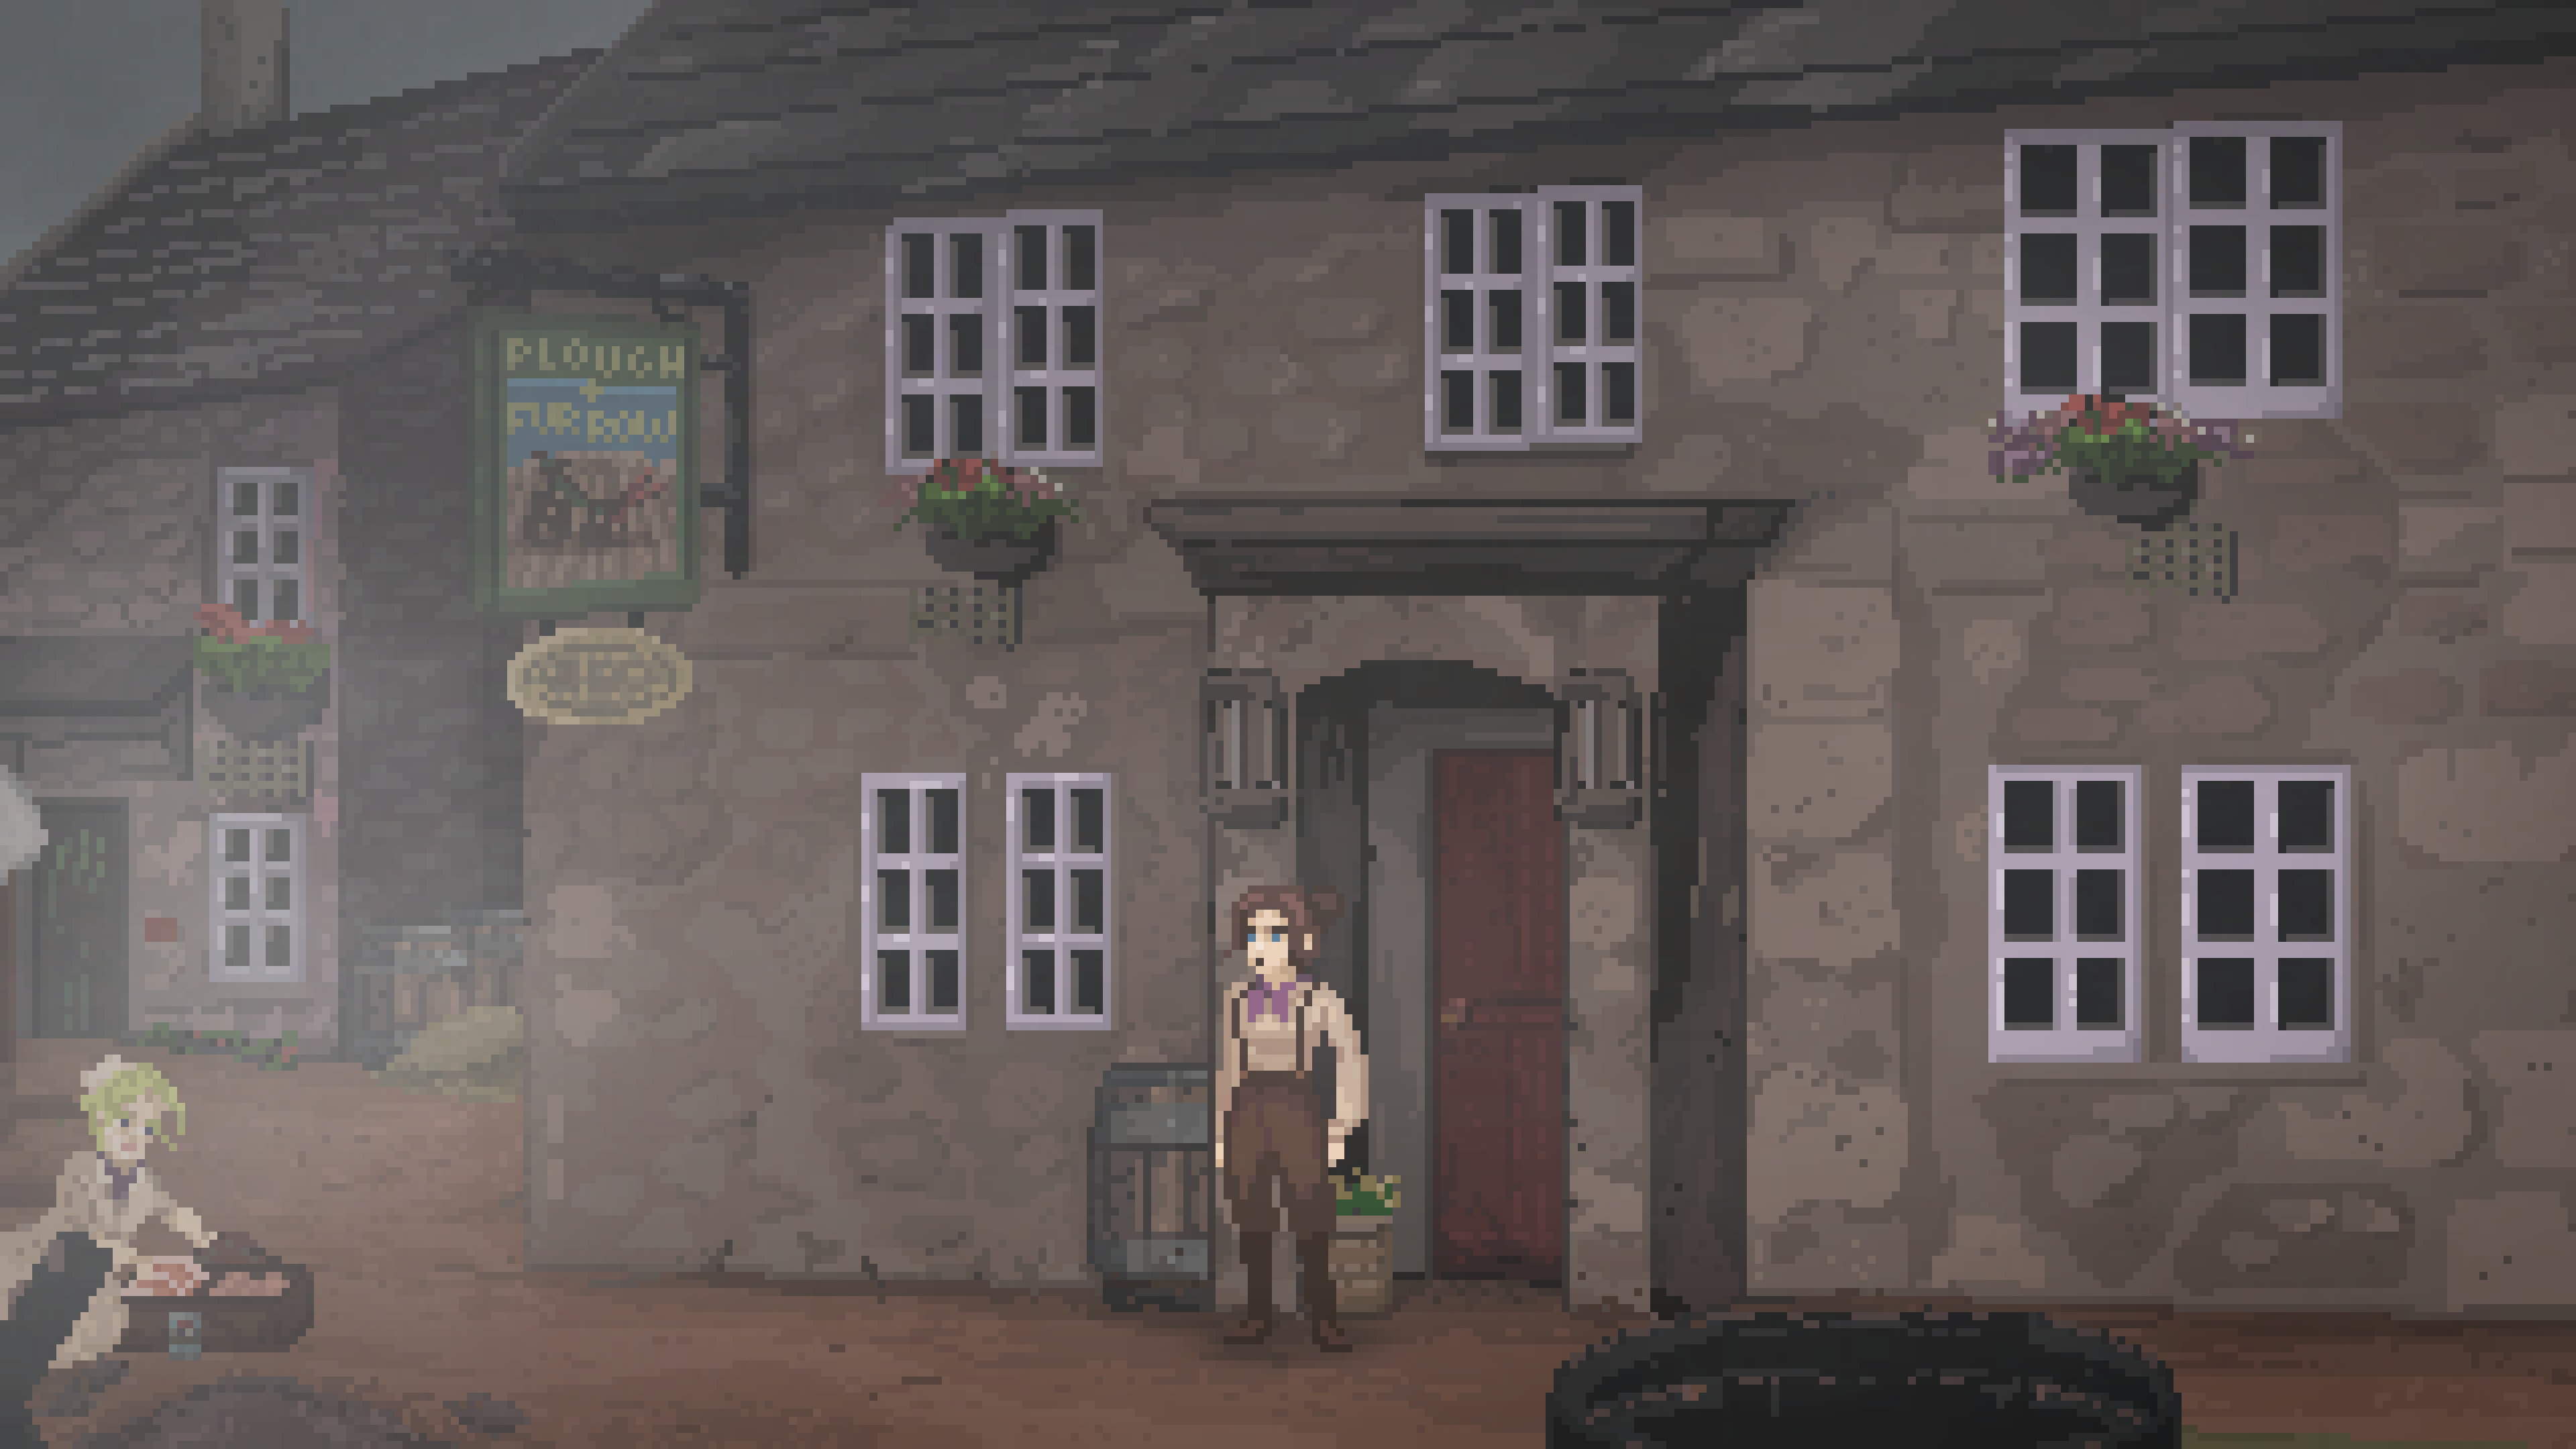 The Excavation of Hobb's Barrow adventure game pixel art